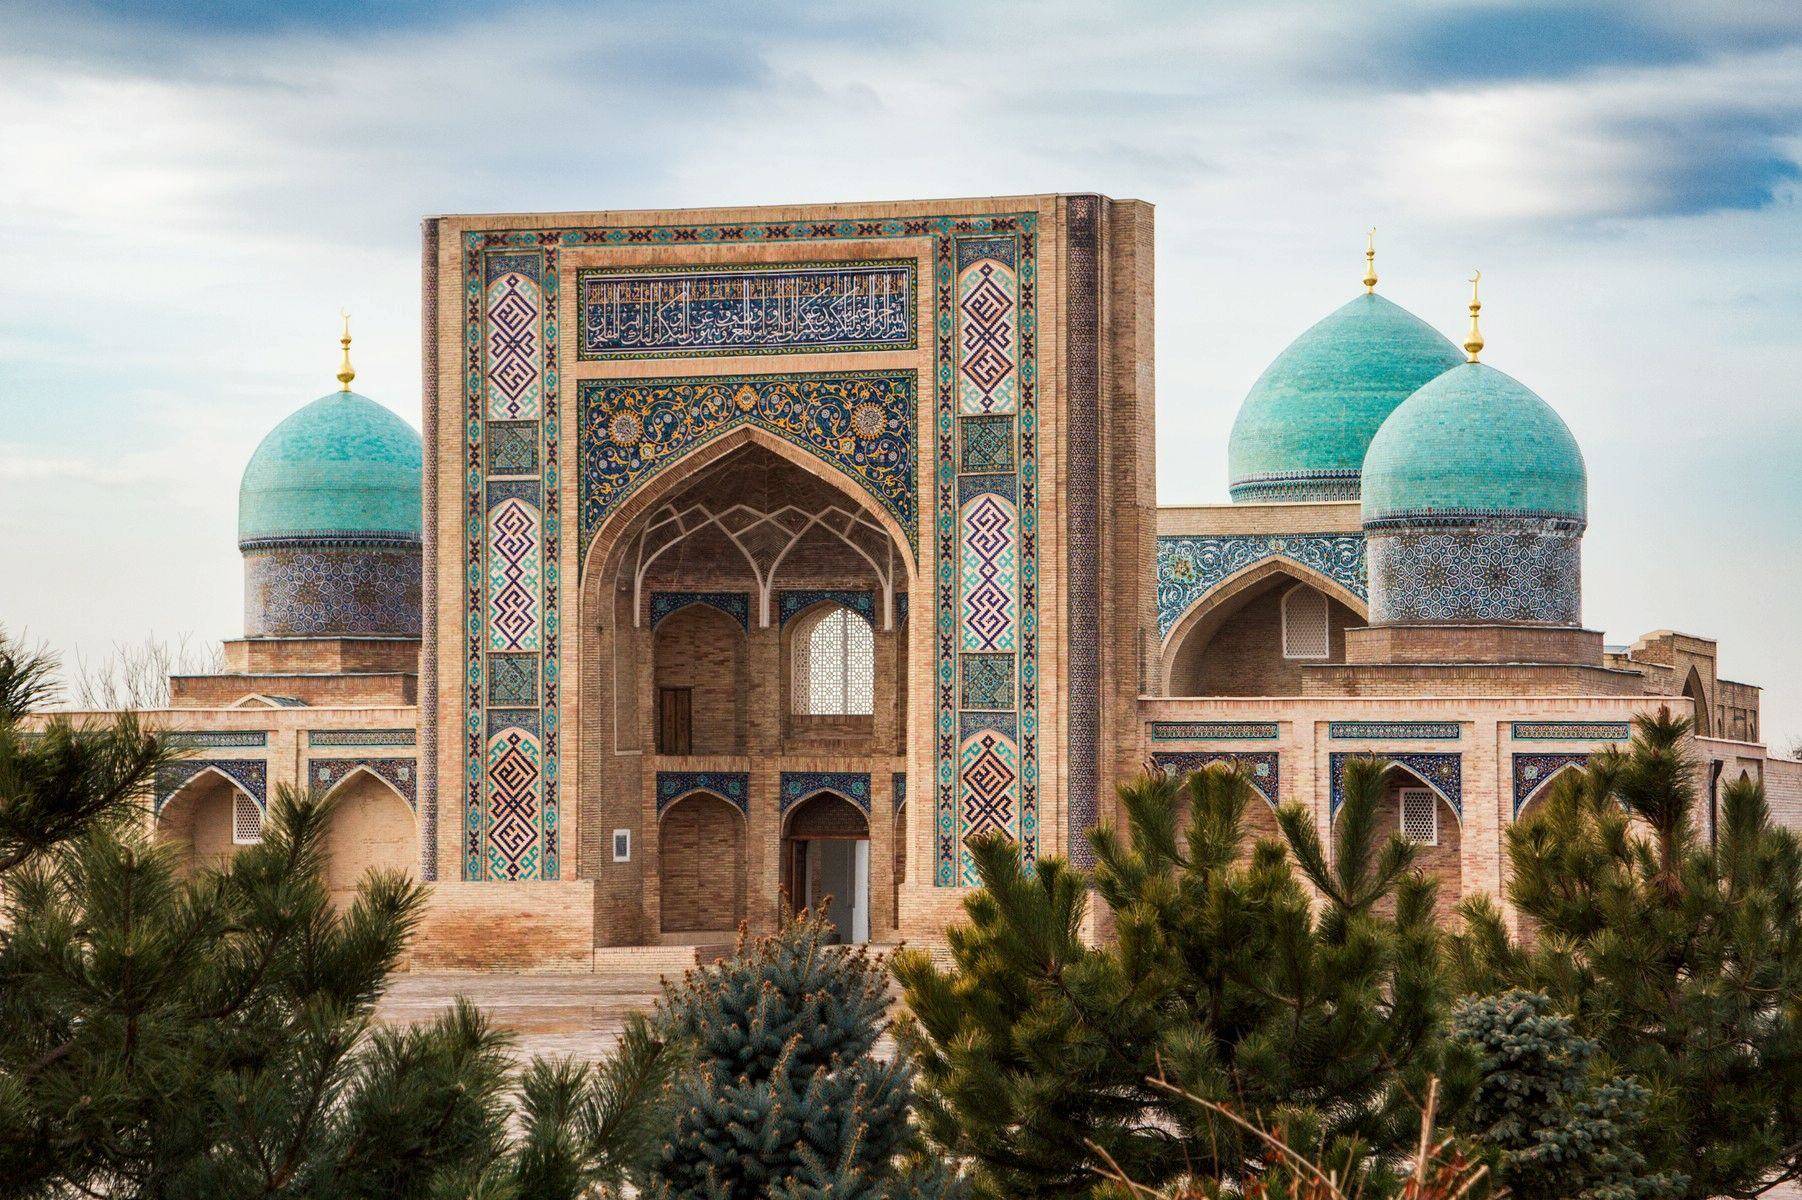 Arrivo a Tashkent e visita della città vecchia